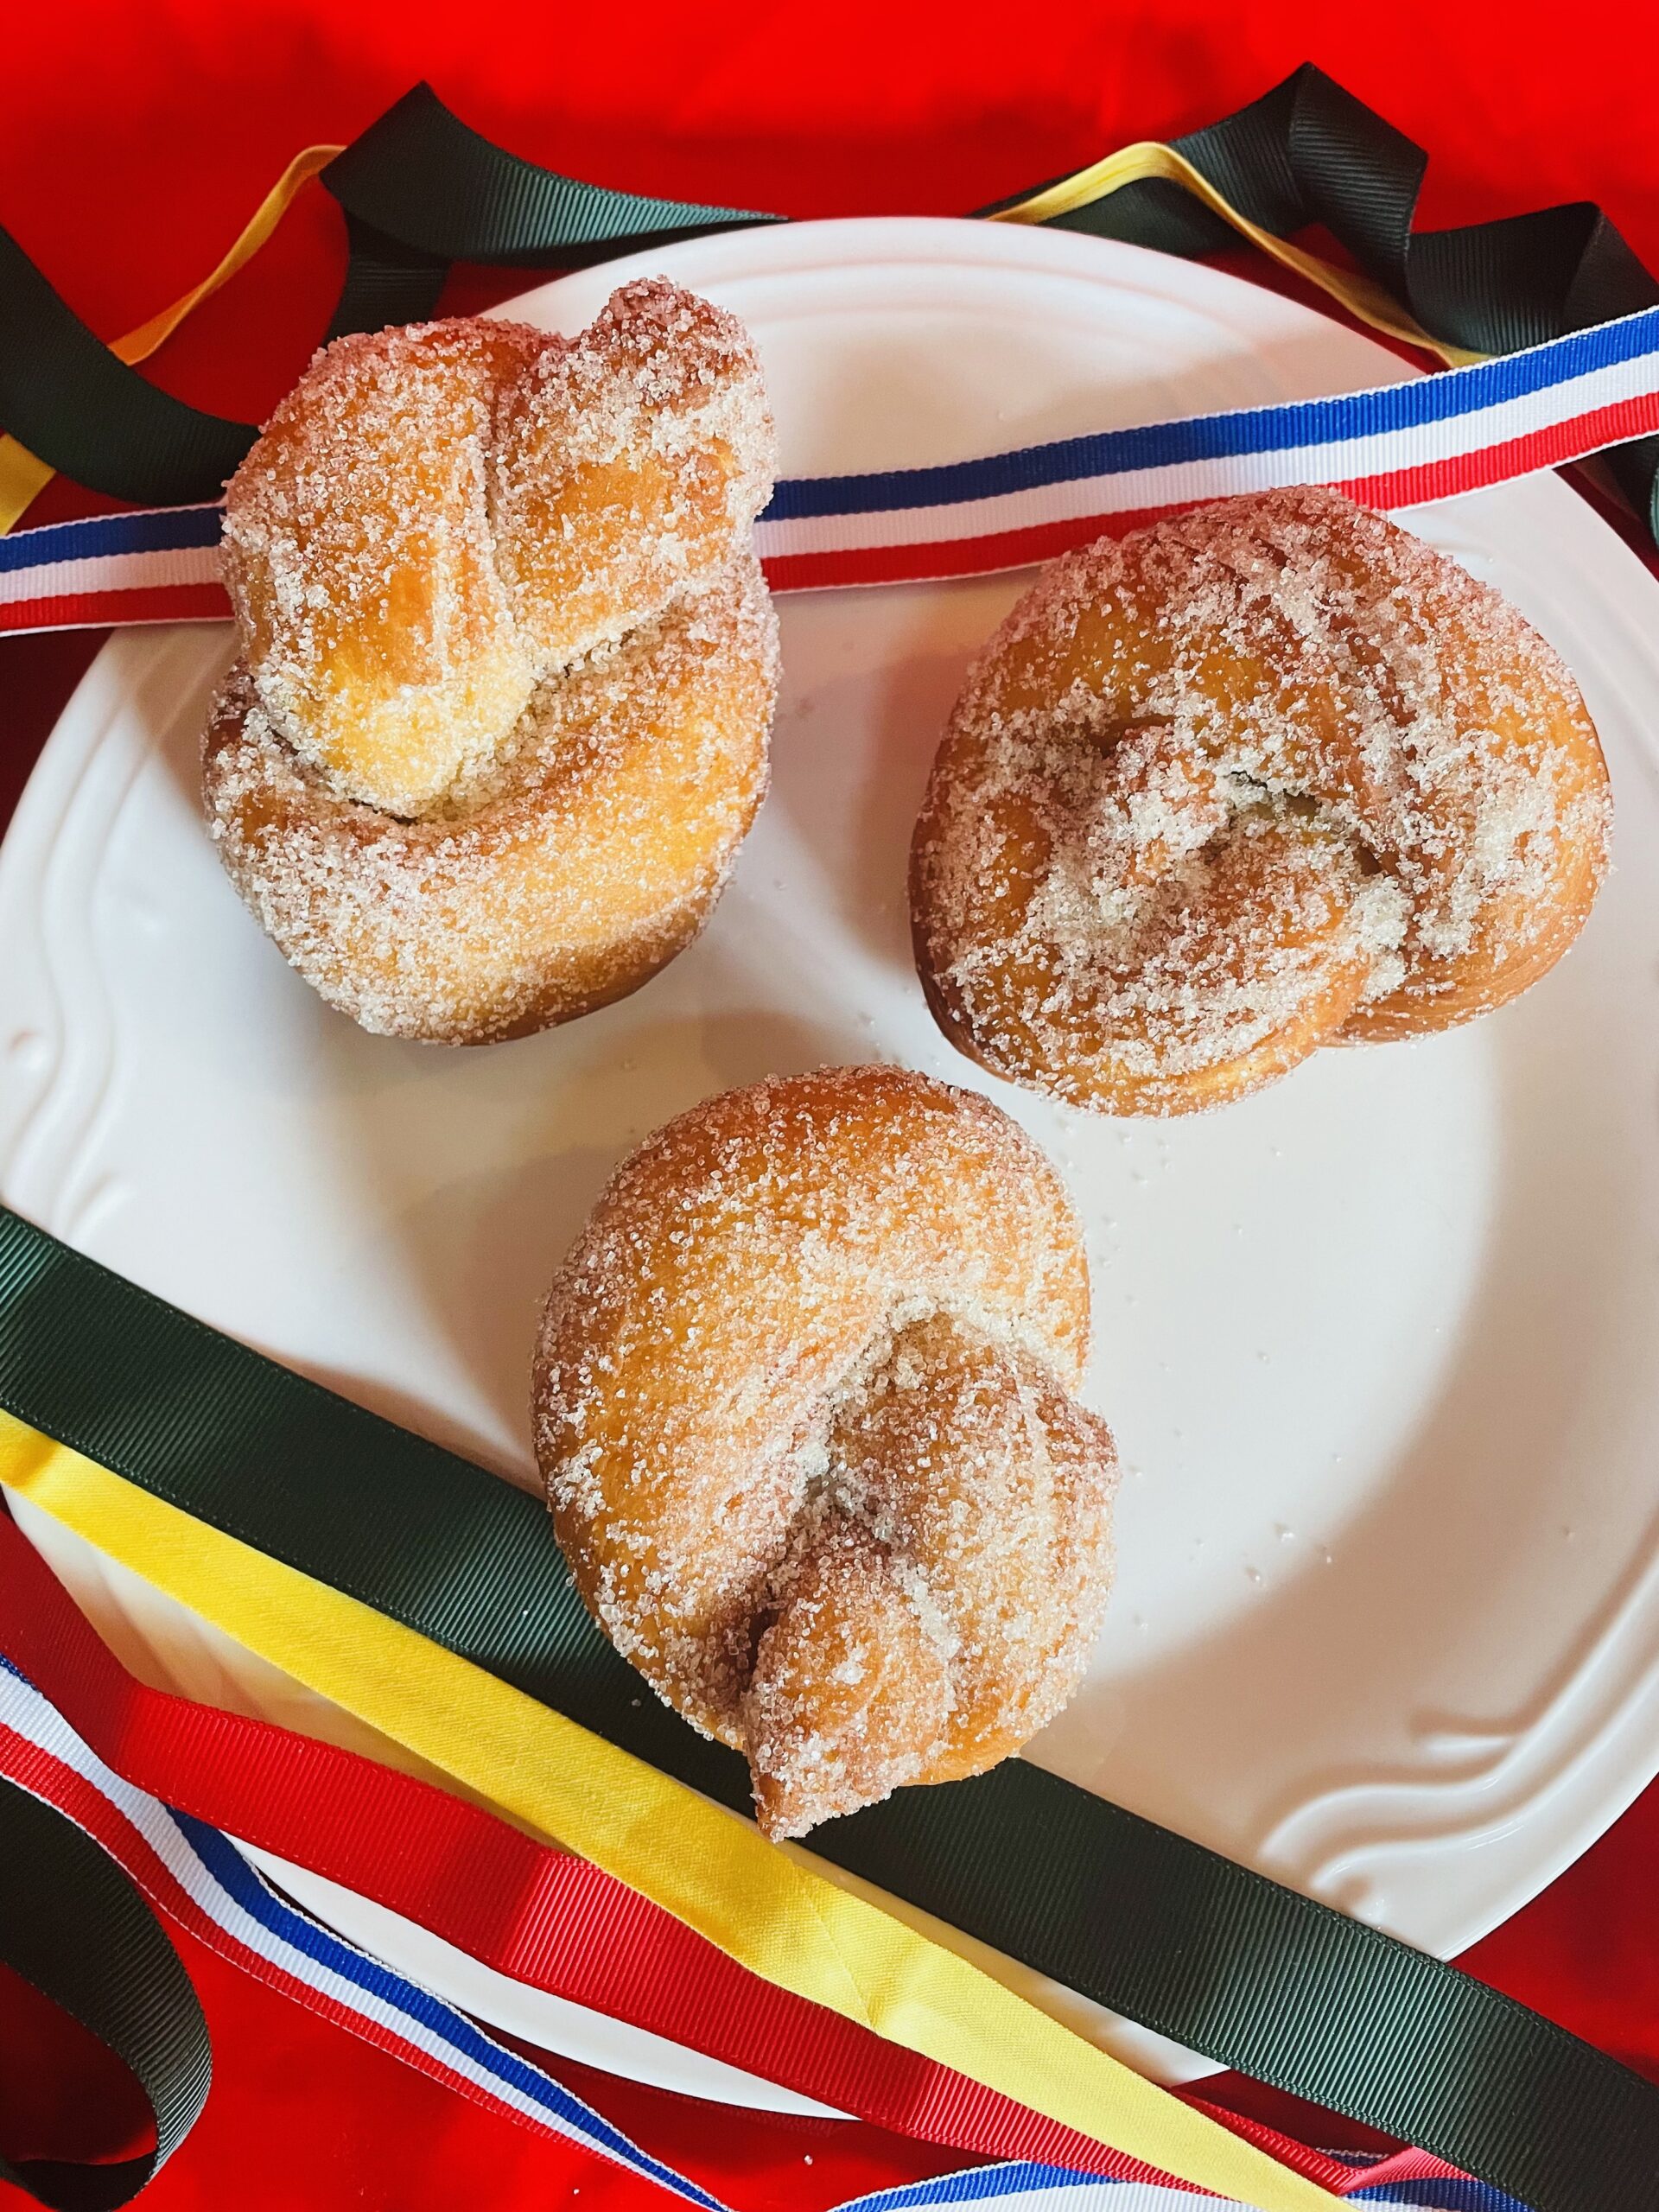 Dutch baked goods: first doughnuts